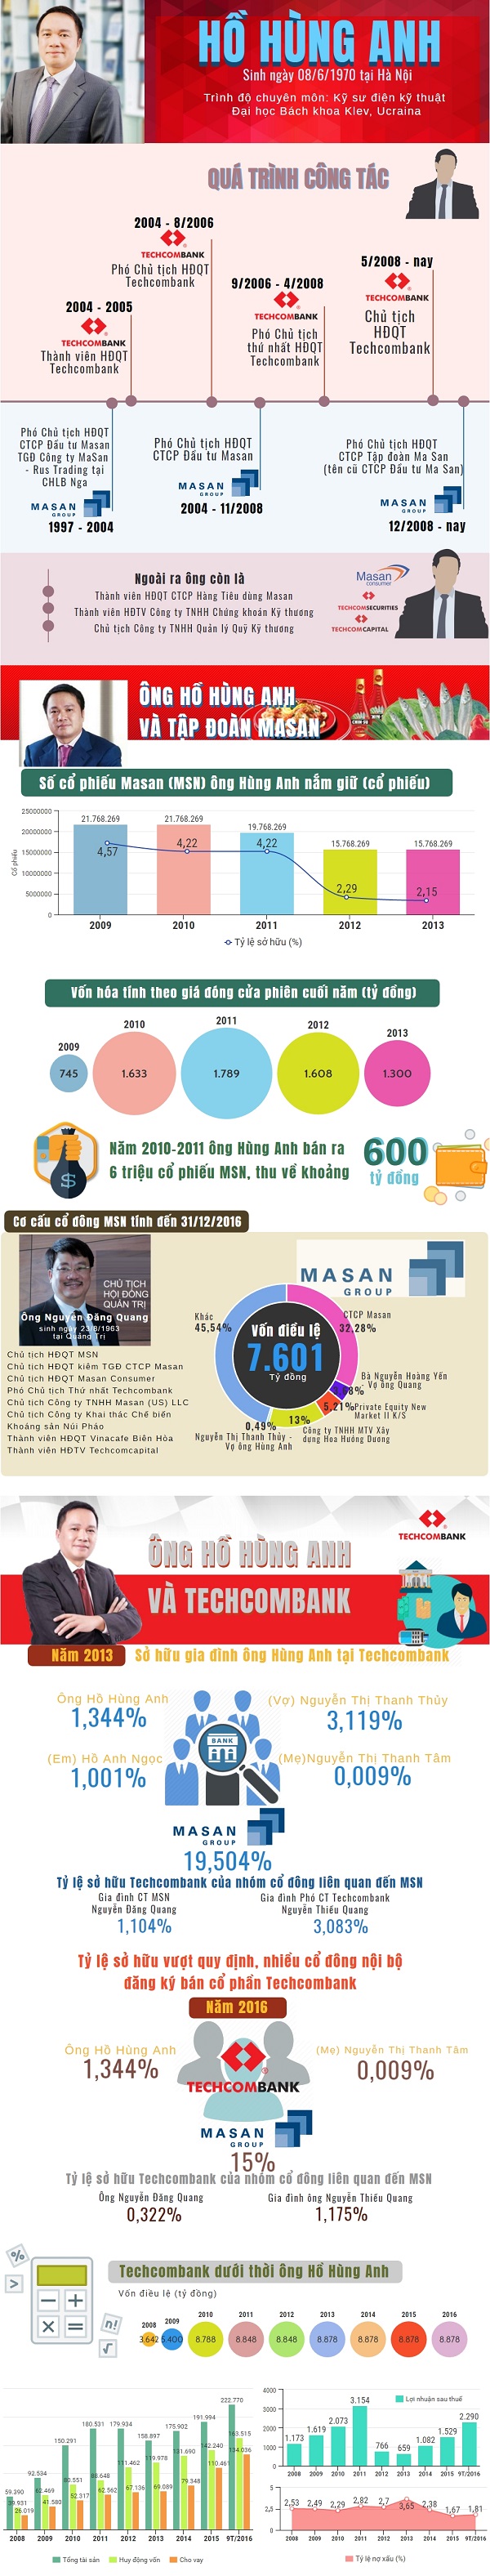 Chân dung ông Hồ Hùng Anh của Masan và Techcombank - Hình 1